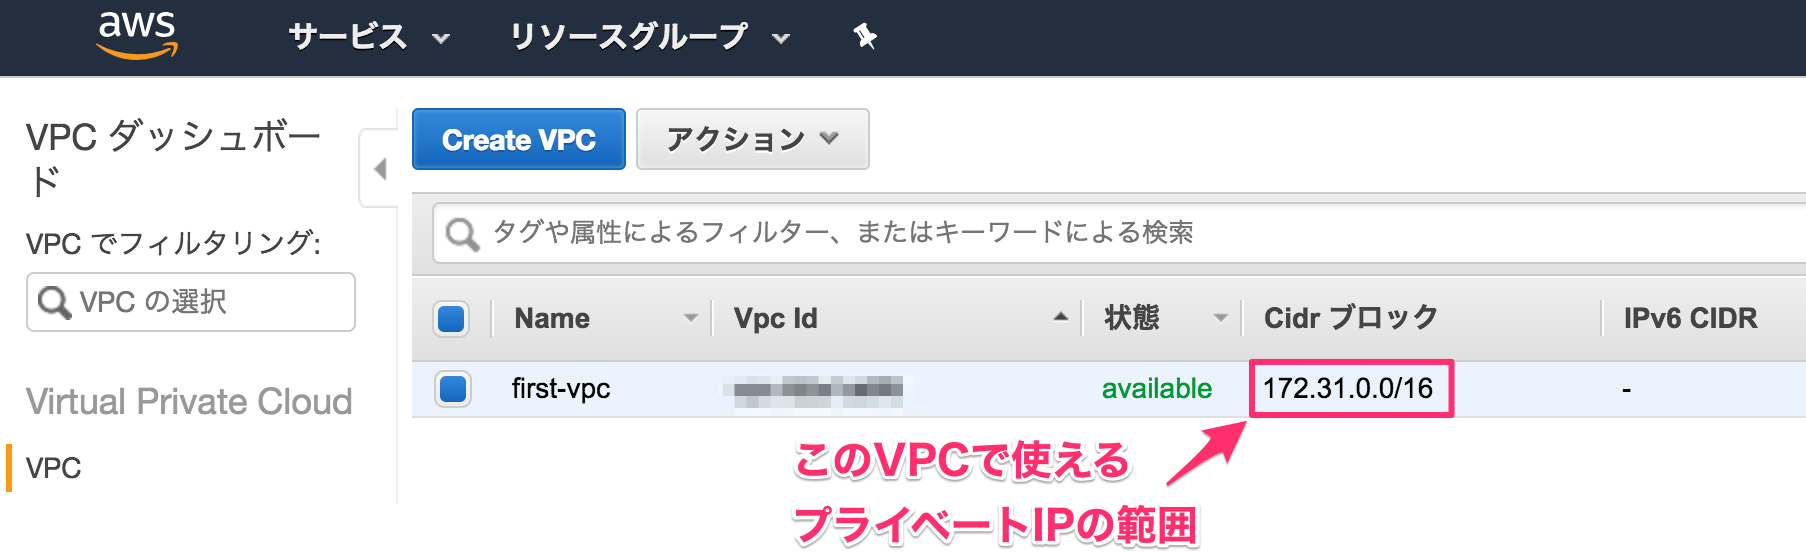 vpcs___VPC_Management_Console.png